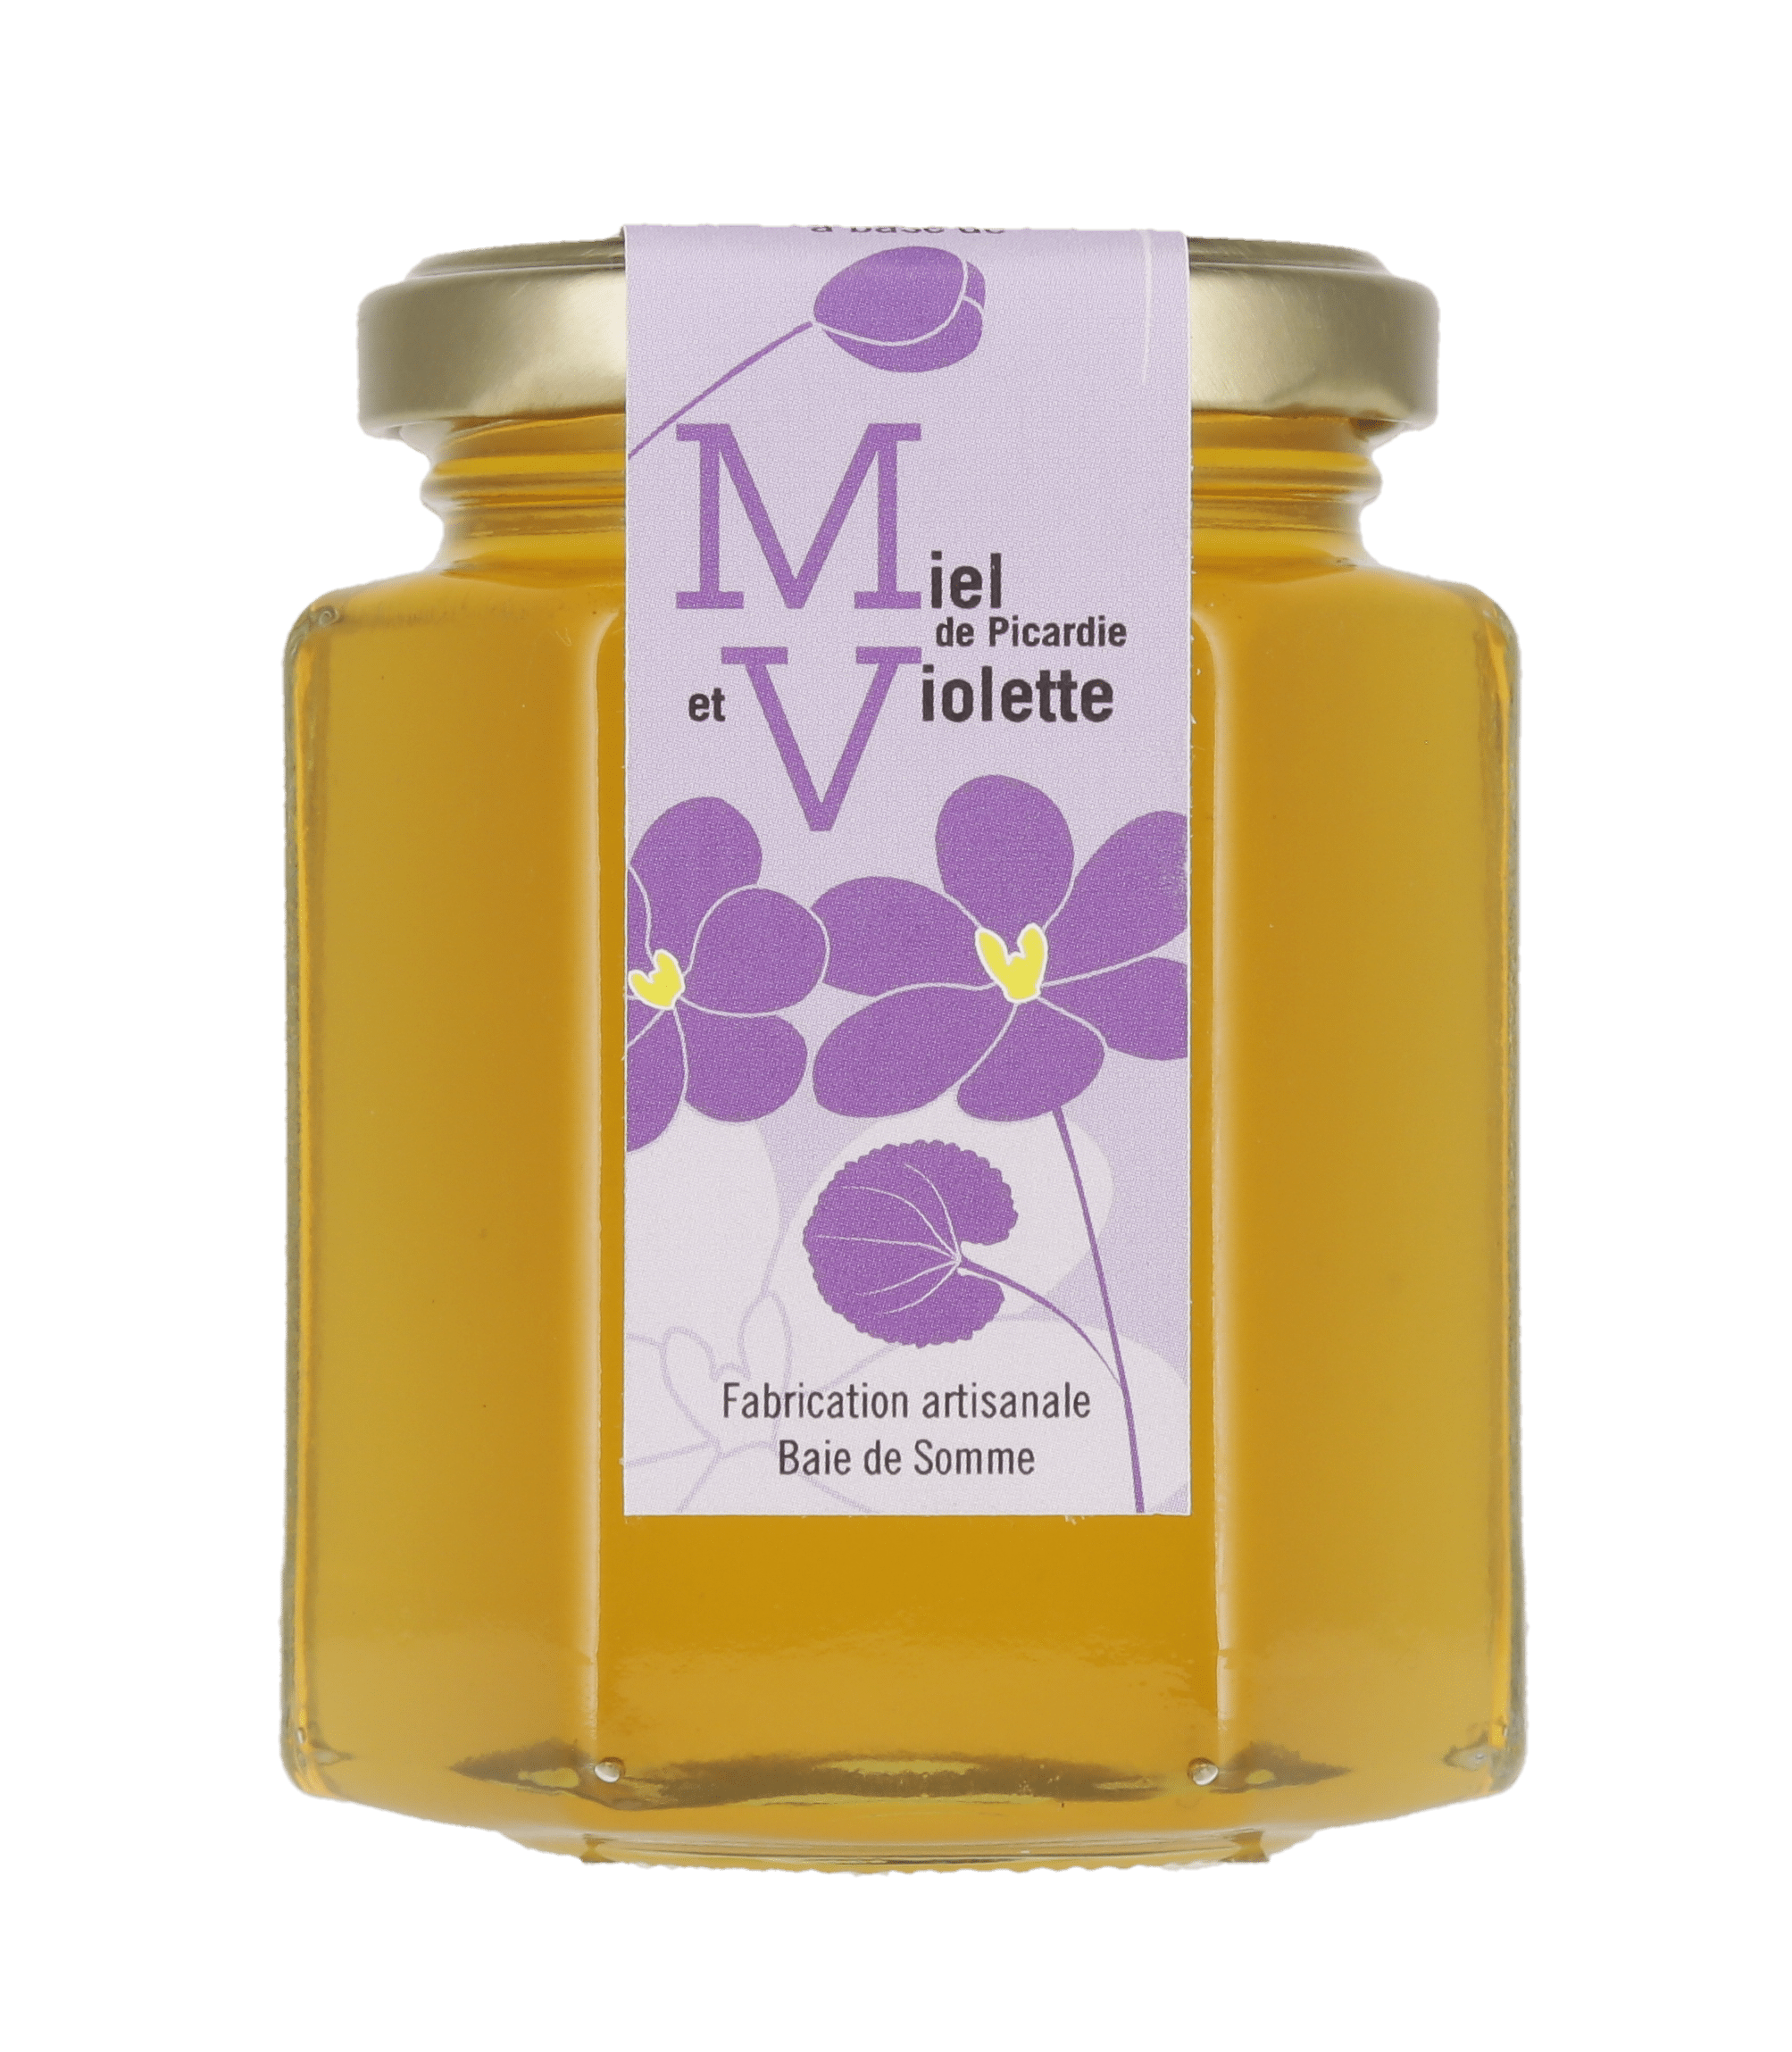 Préparation à base de miel de Picardie et de violette